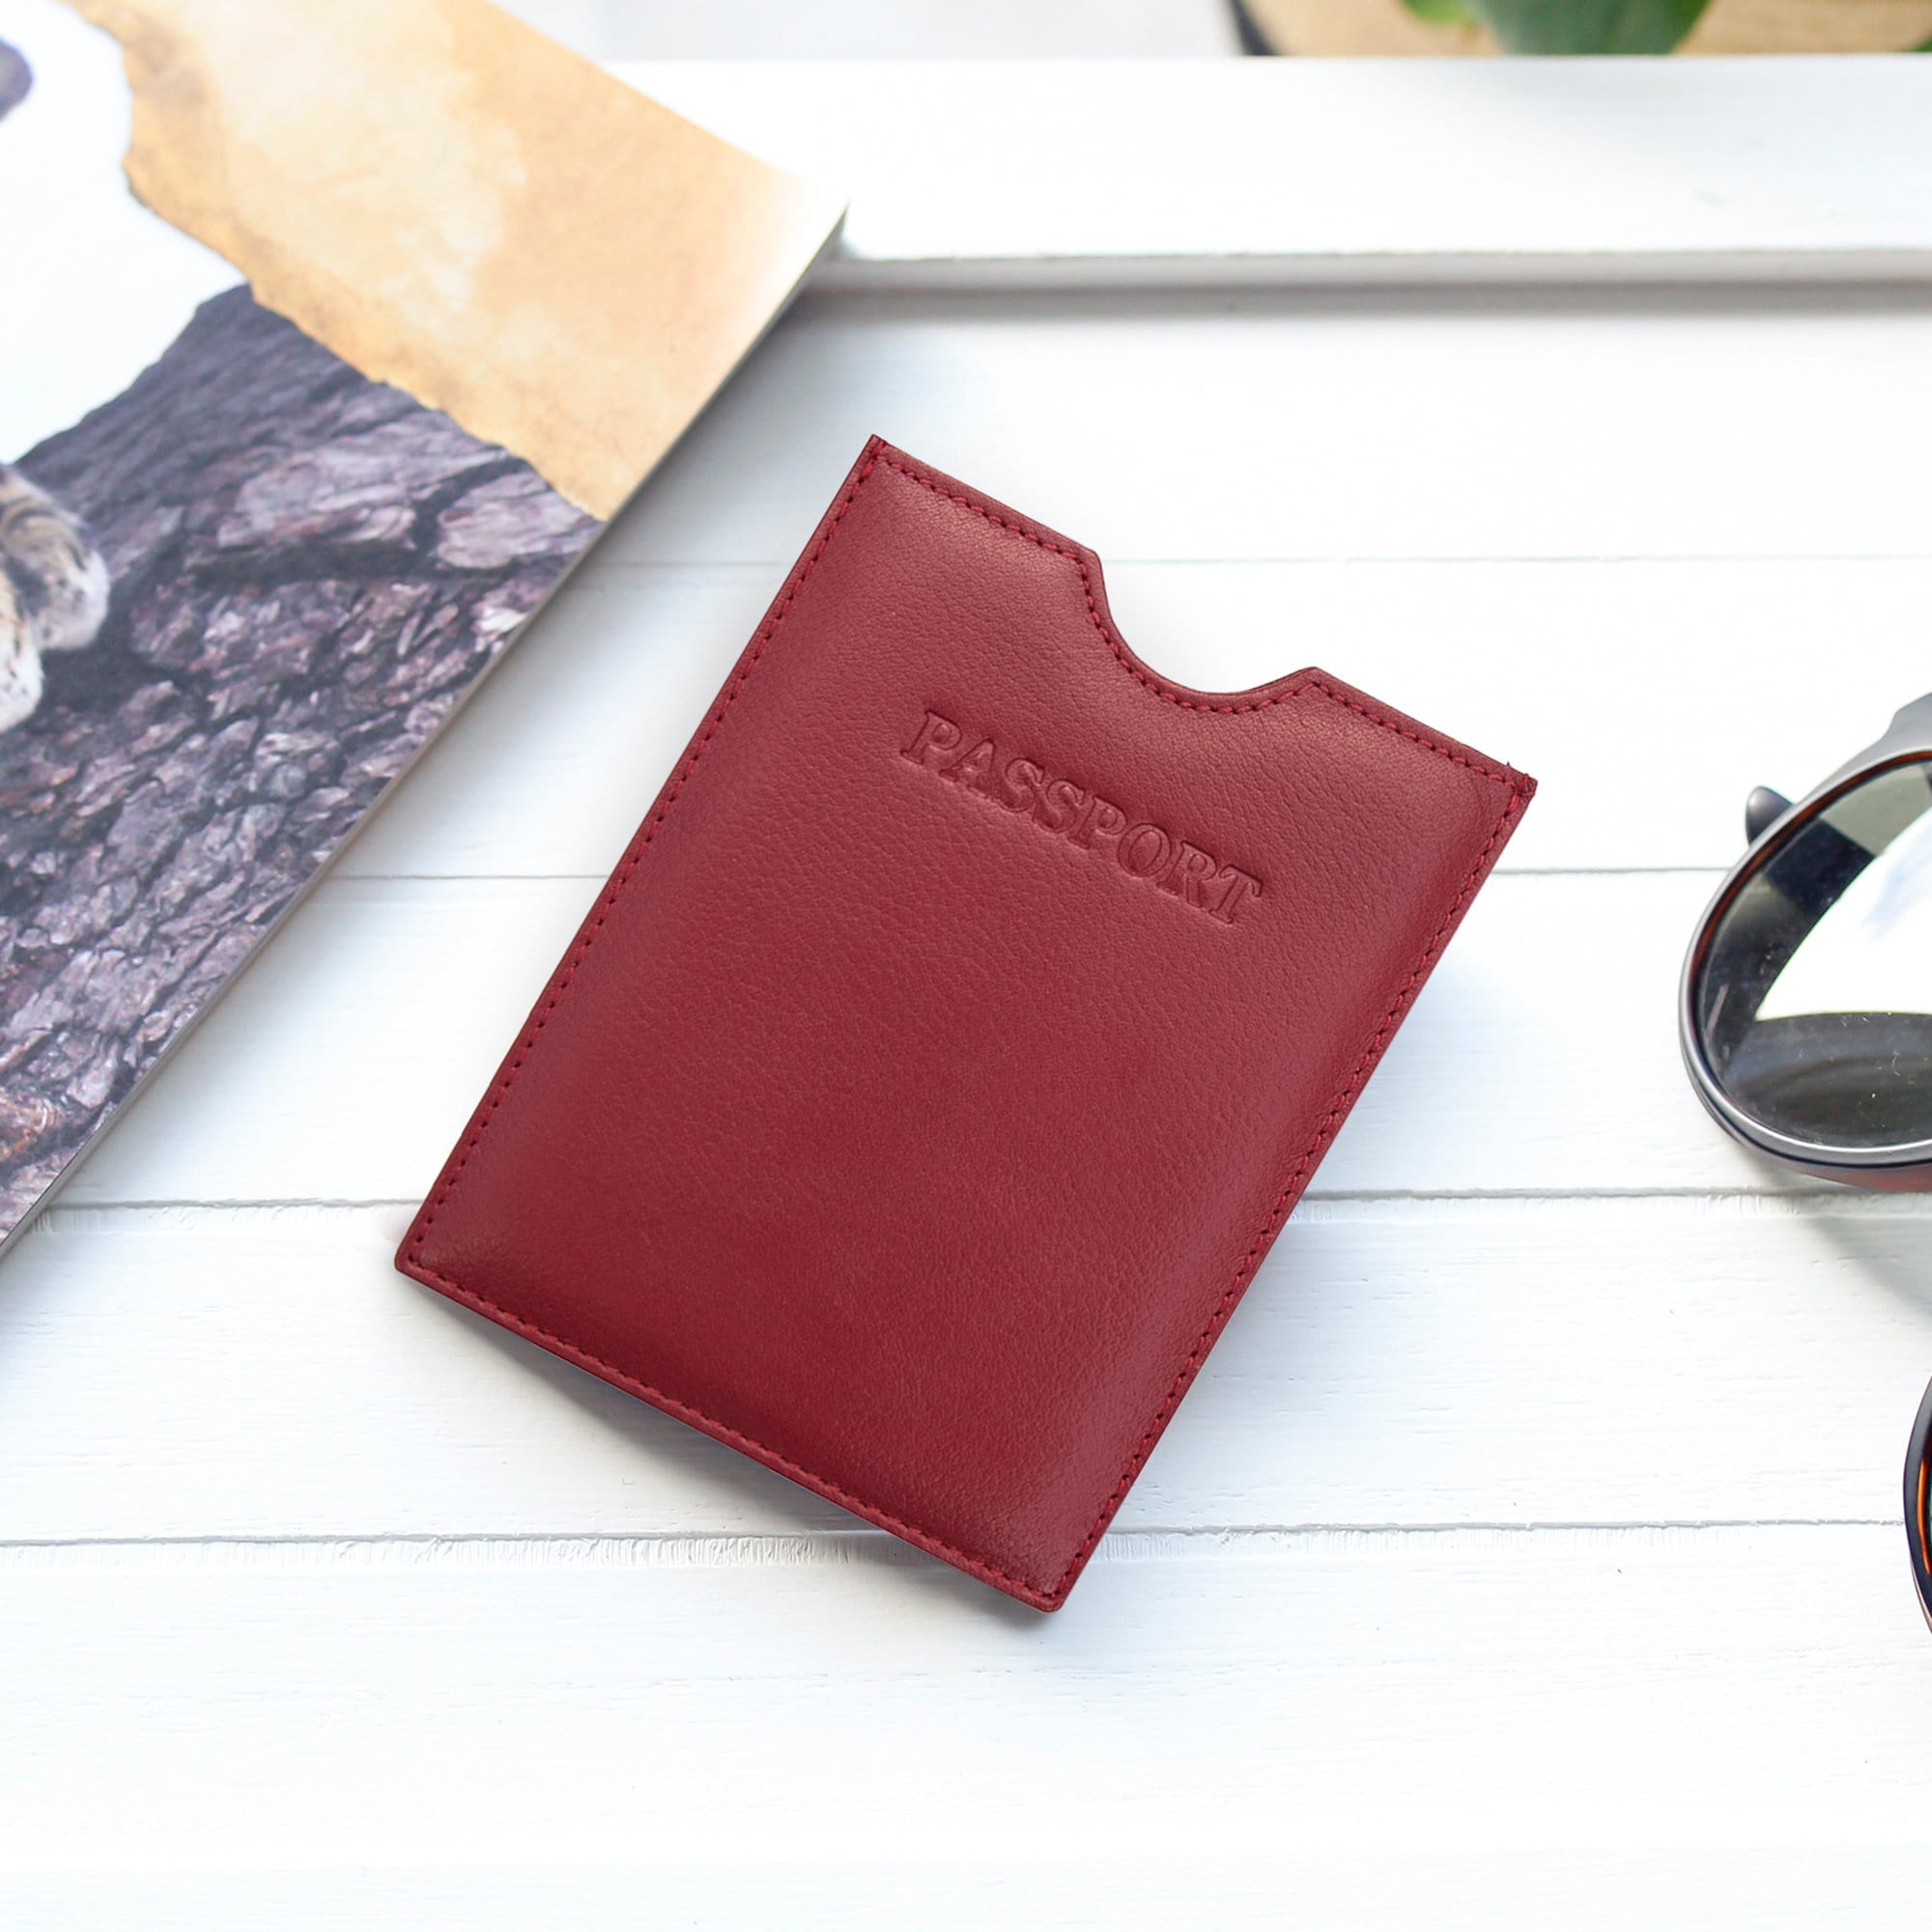 TUGO Adventurer Genuine Leather Passport Wallet - TUGO Travel Gear